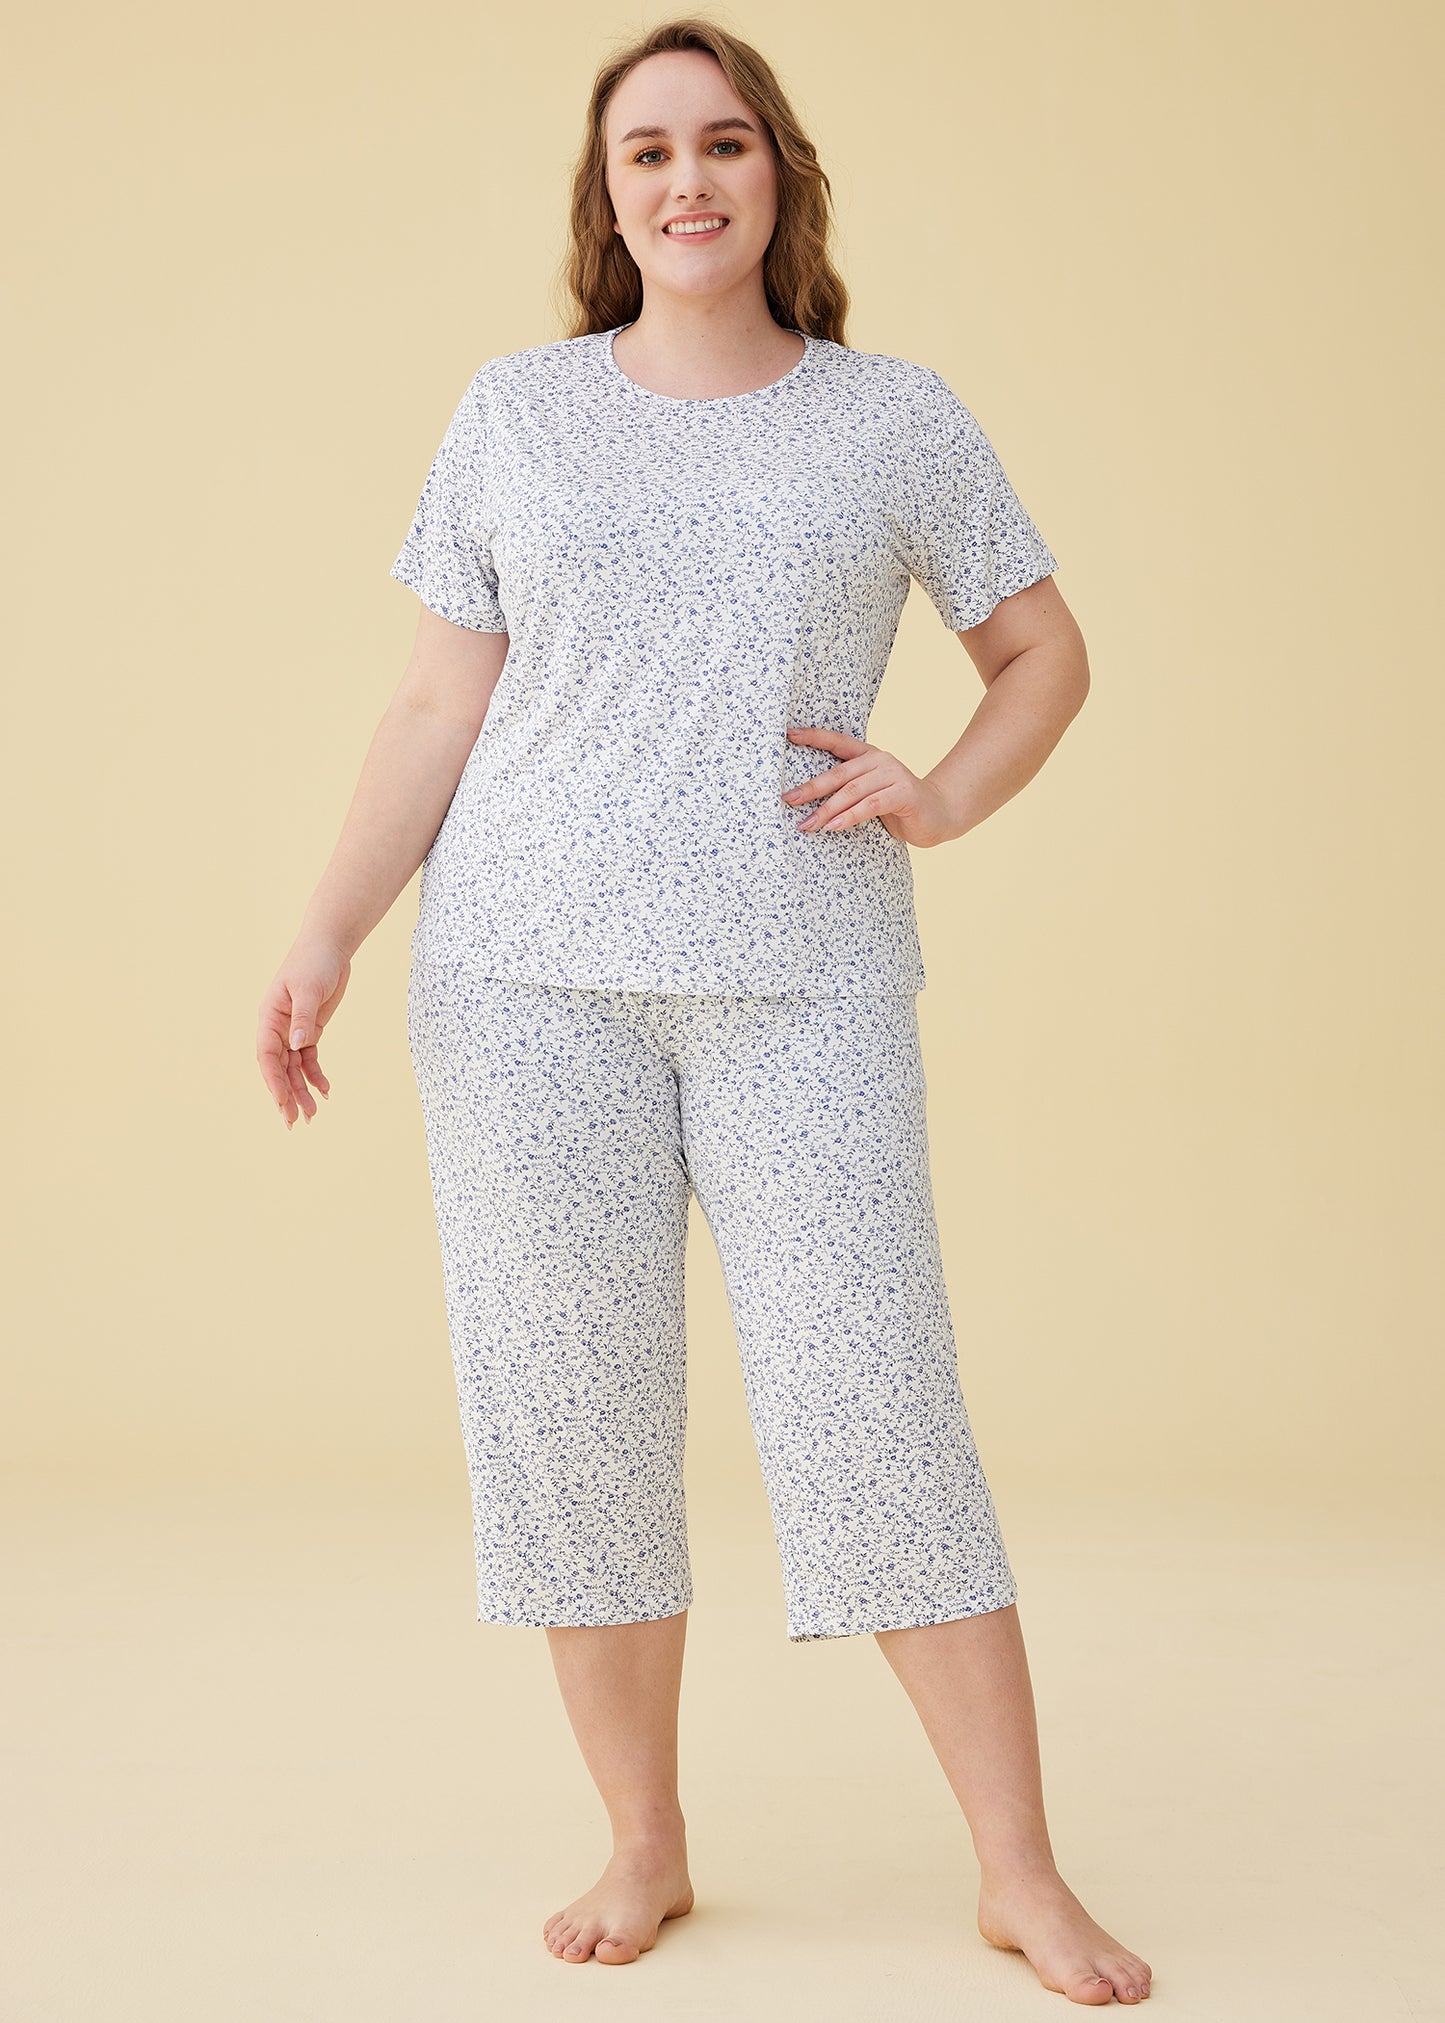 Latuza Women's Floral Short Sleeve Top with Capris Pajama Set